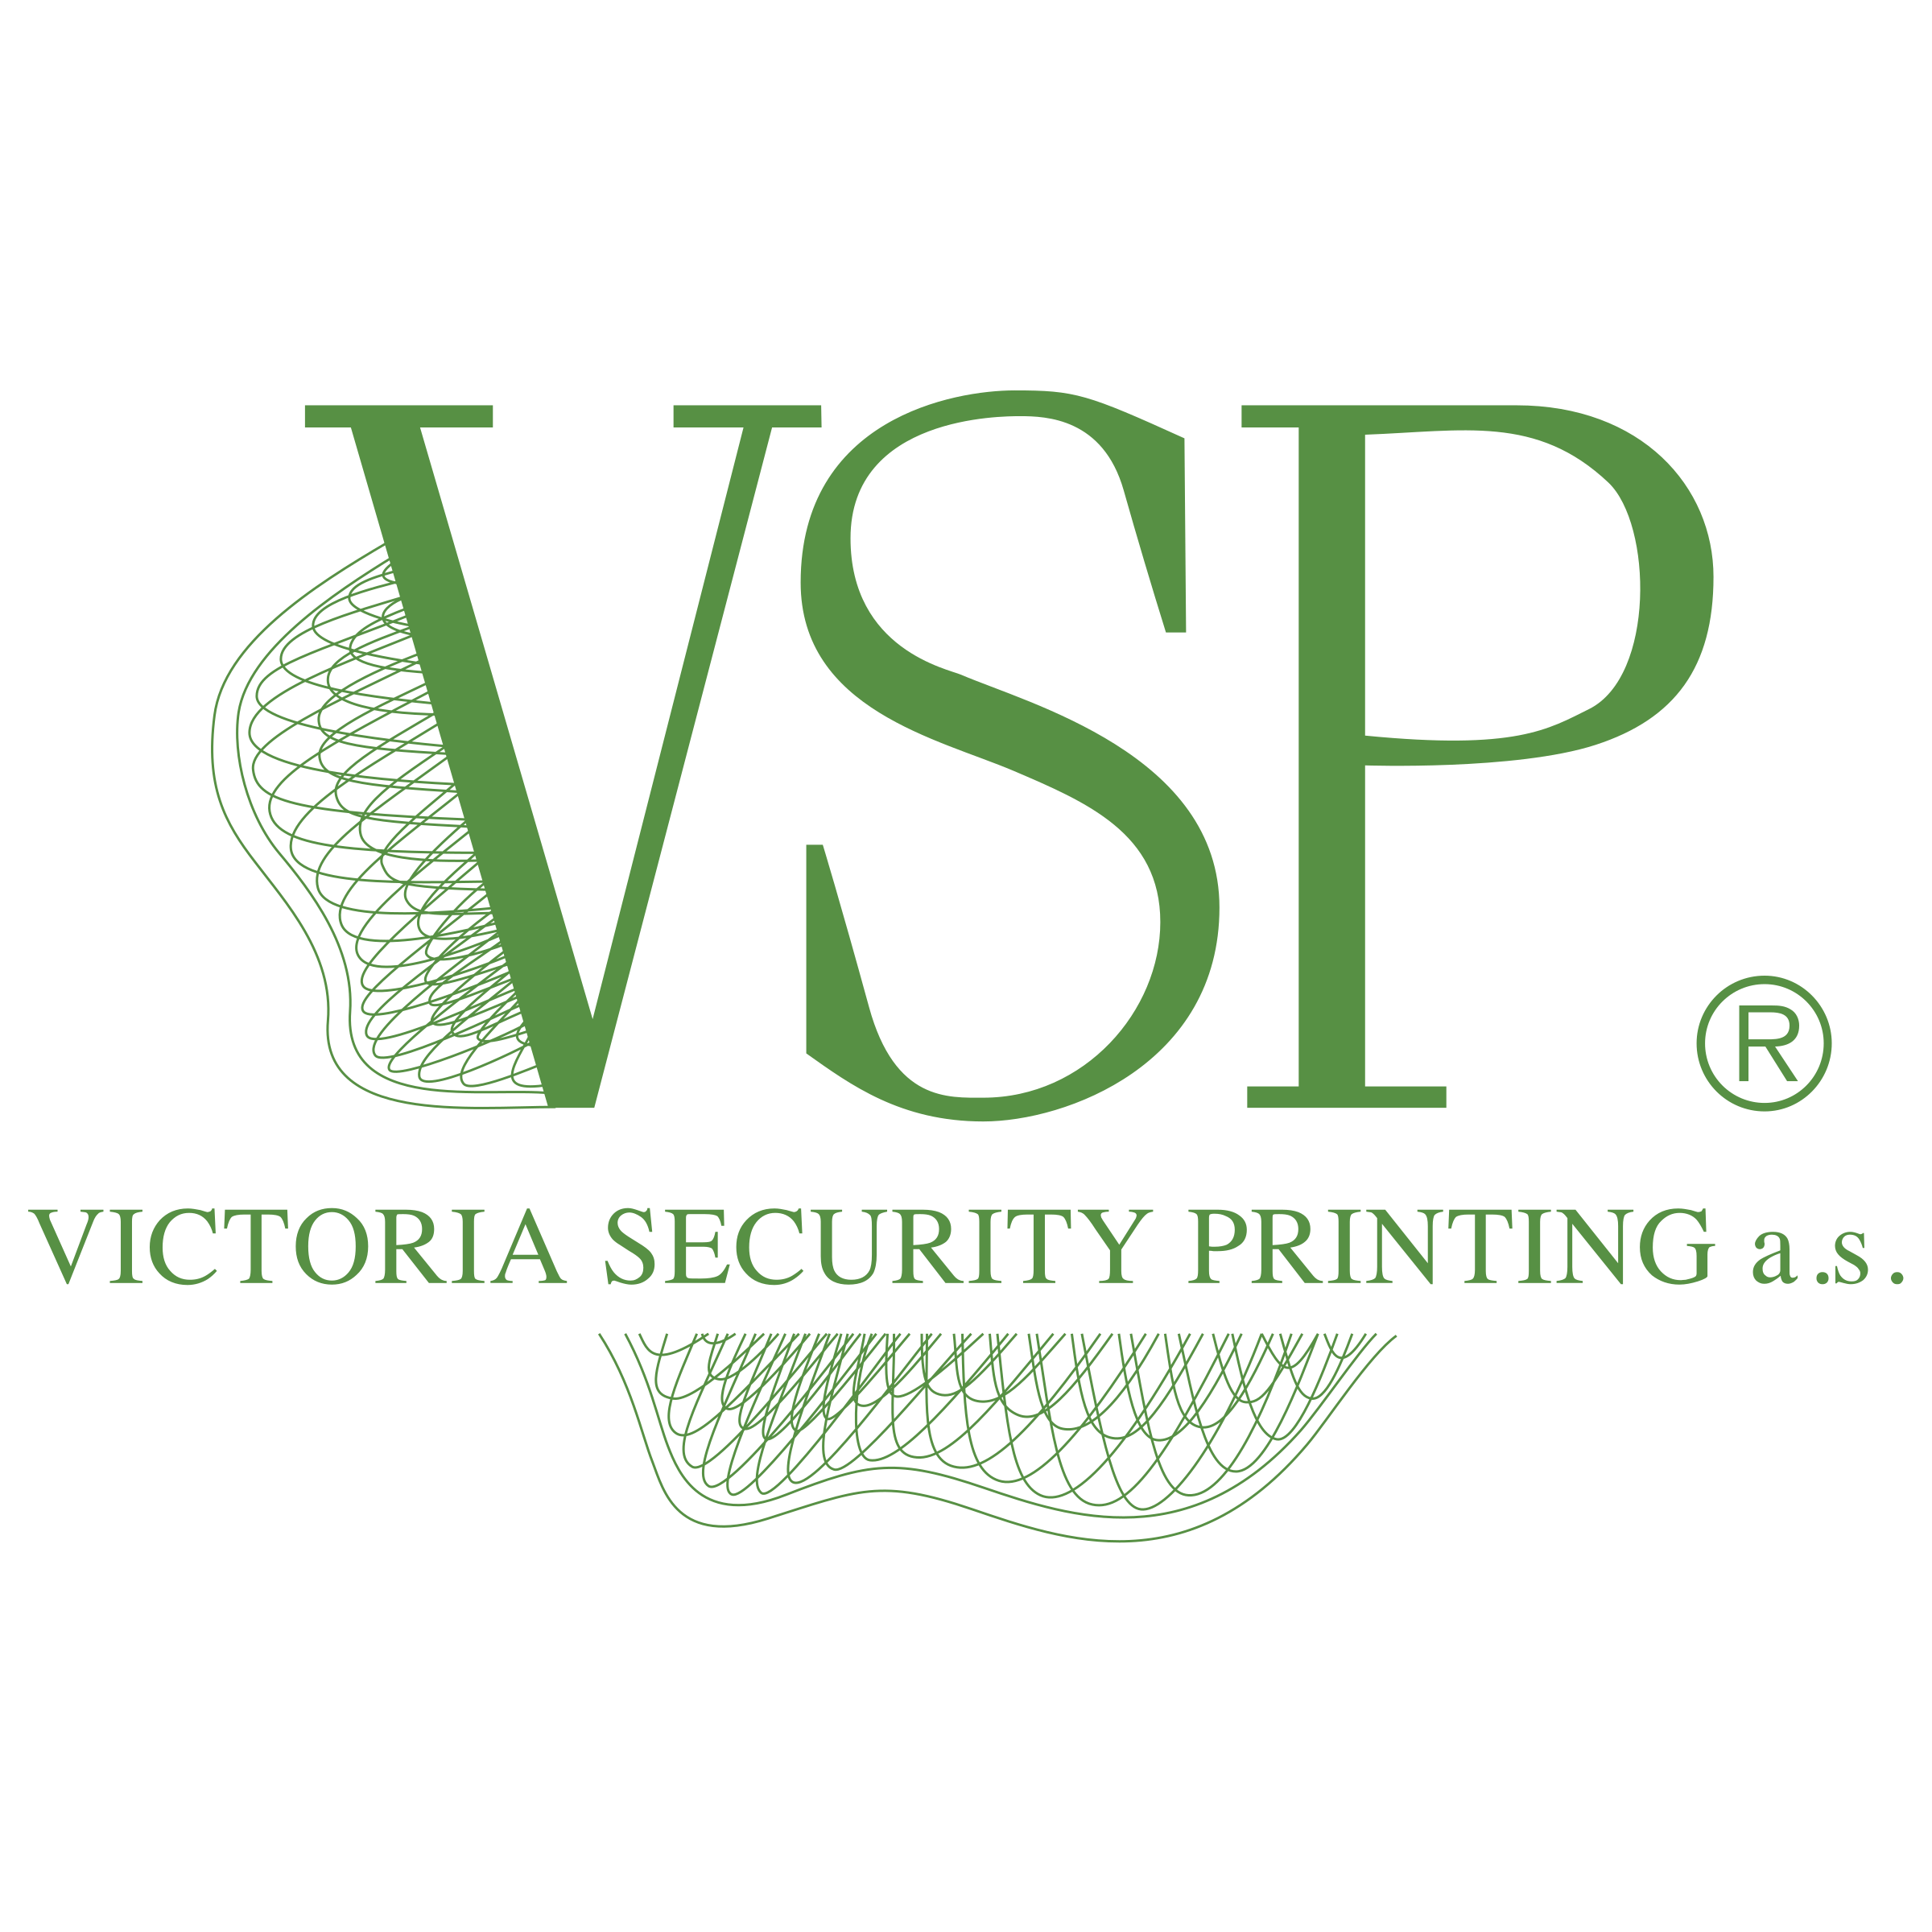 VSP Logo - VSP Logo PNG Transparent & SVG Vector - Freebie Supply